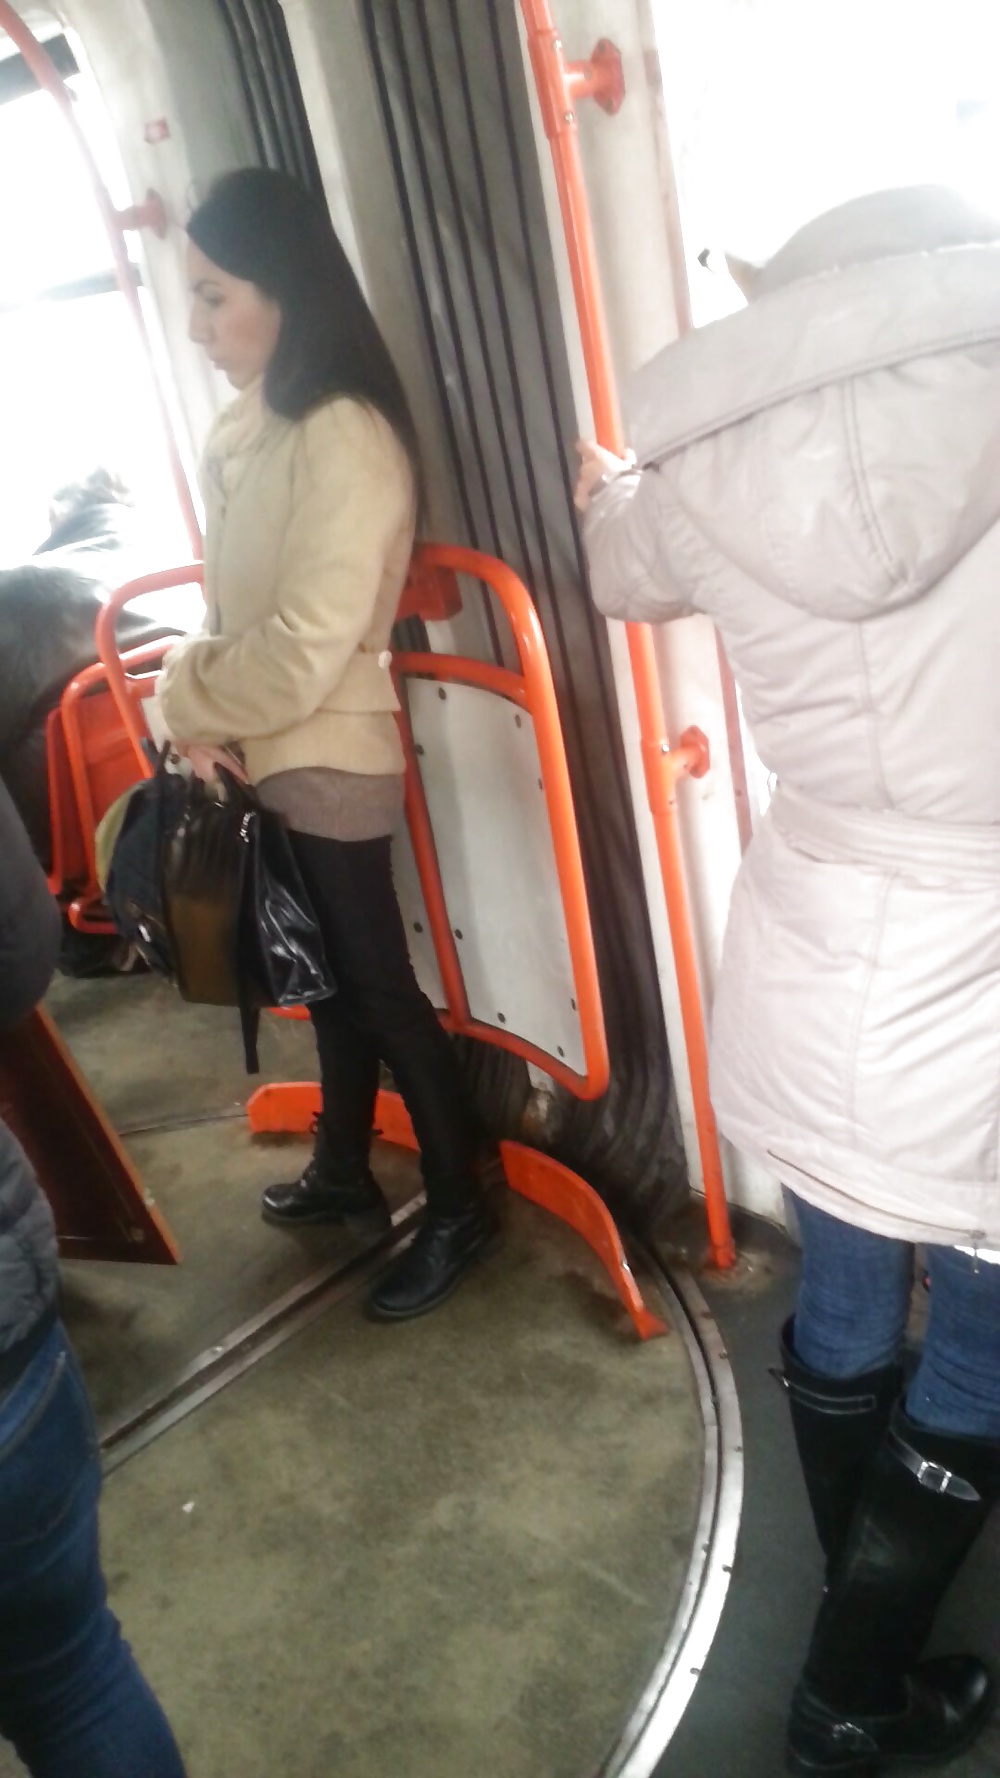 Spy sexy women in tram romanian #41079267